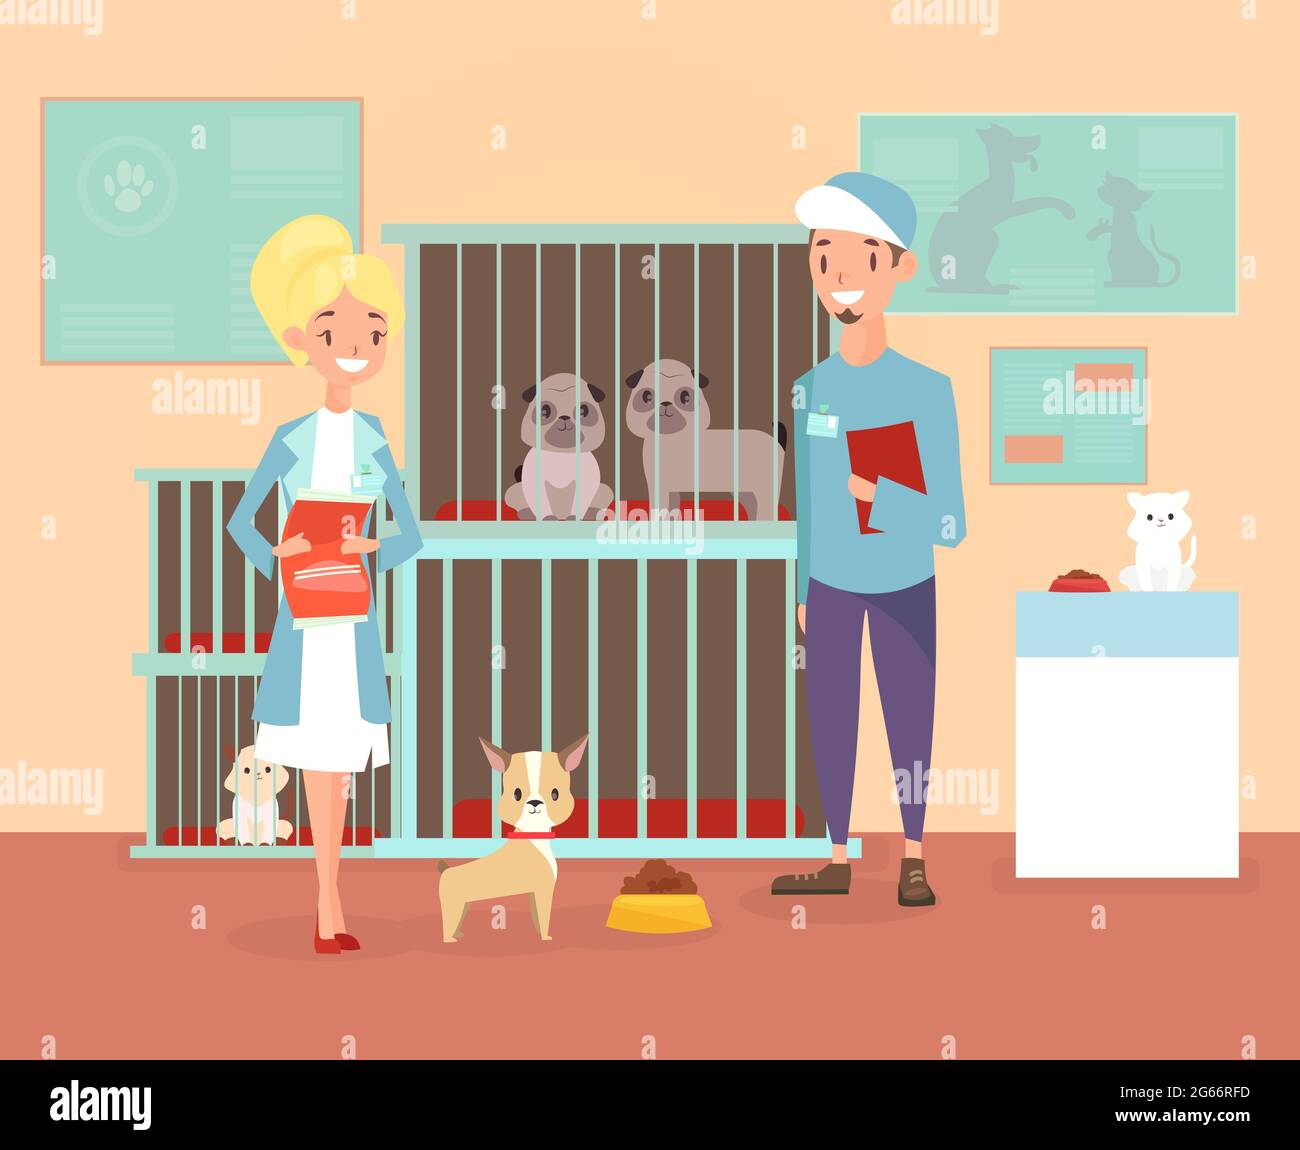 Illustration vectorielle d'un abri pour animaux avec des personnages bénévoles avec des chiens et des chats. Concept d'hébergement, d'adoption d'animaux de compagnie. Animaux de compagnie heureux dans un abri avec des vetetinars Illustration de Vecteur